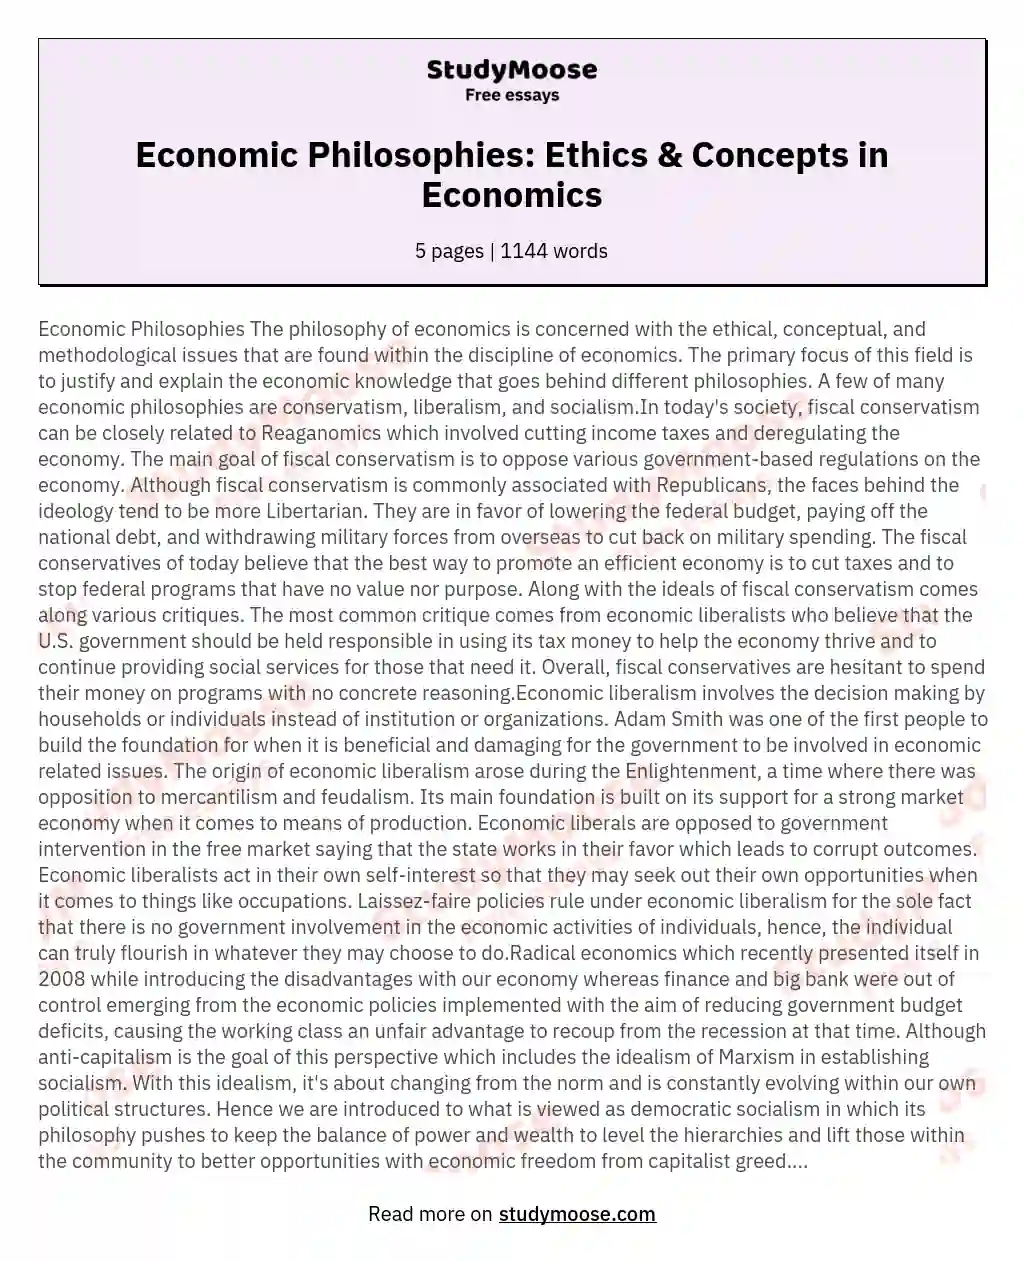 Economic Philosophies: Ethics & Concepts in Economics essay